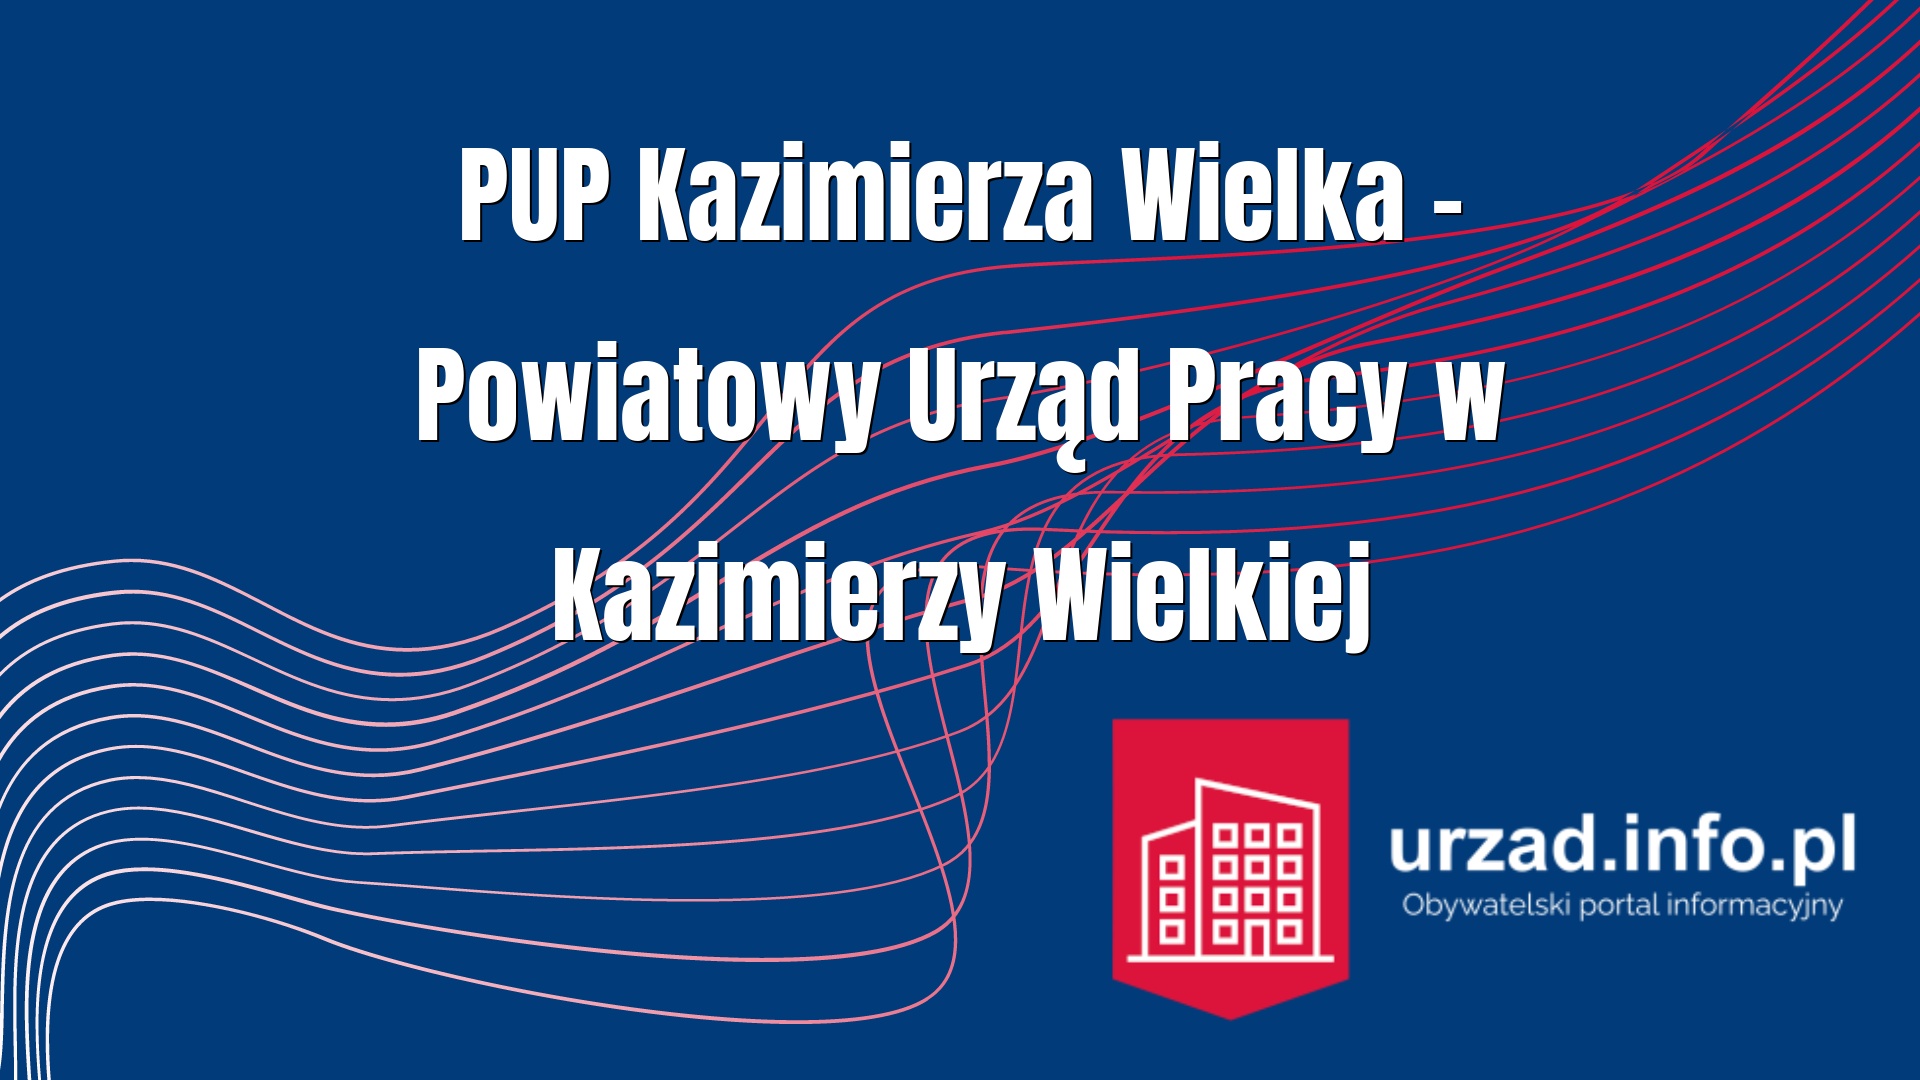 PUP Kazimierza Wielka – Powiatowy Urząd Pracy w Kazimierzy Wielkiej